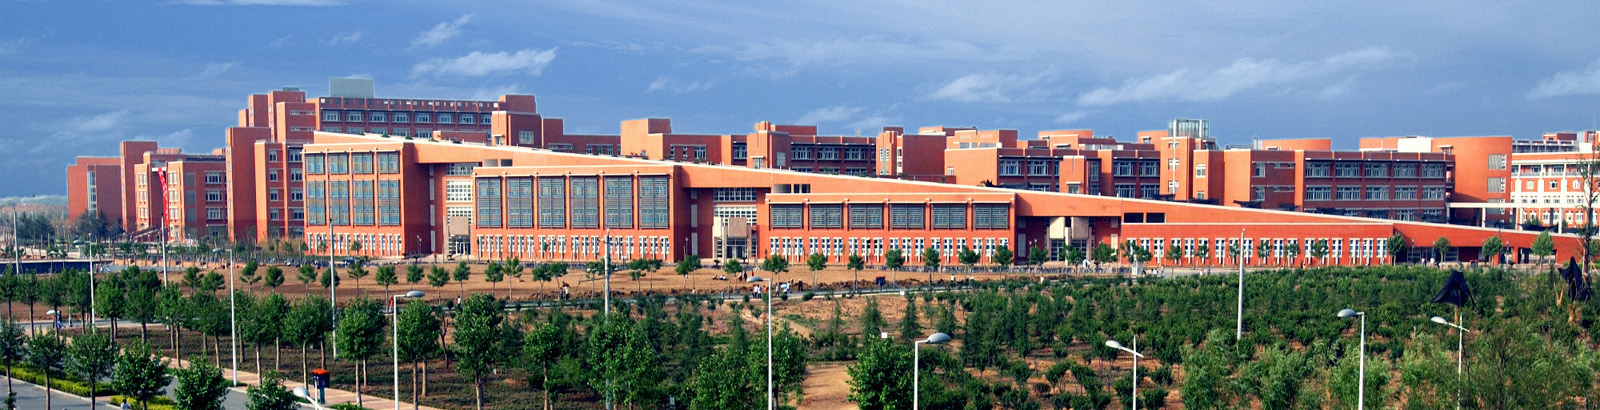 大学的前身),1952年该校迁入郑州成立河南医学院(全国首批博士学位